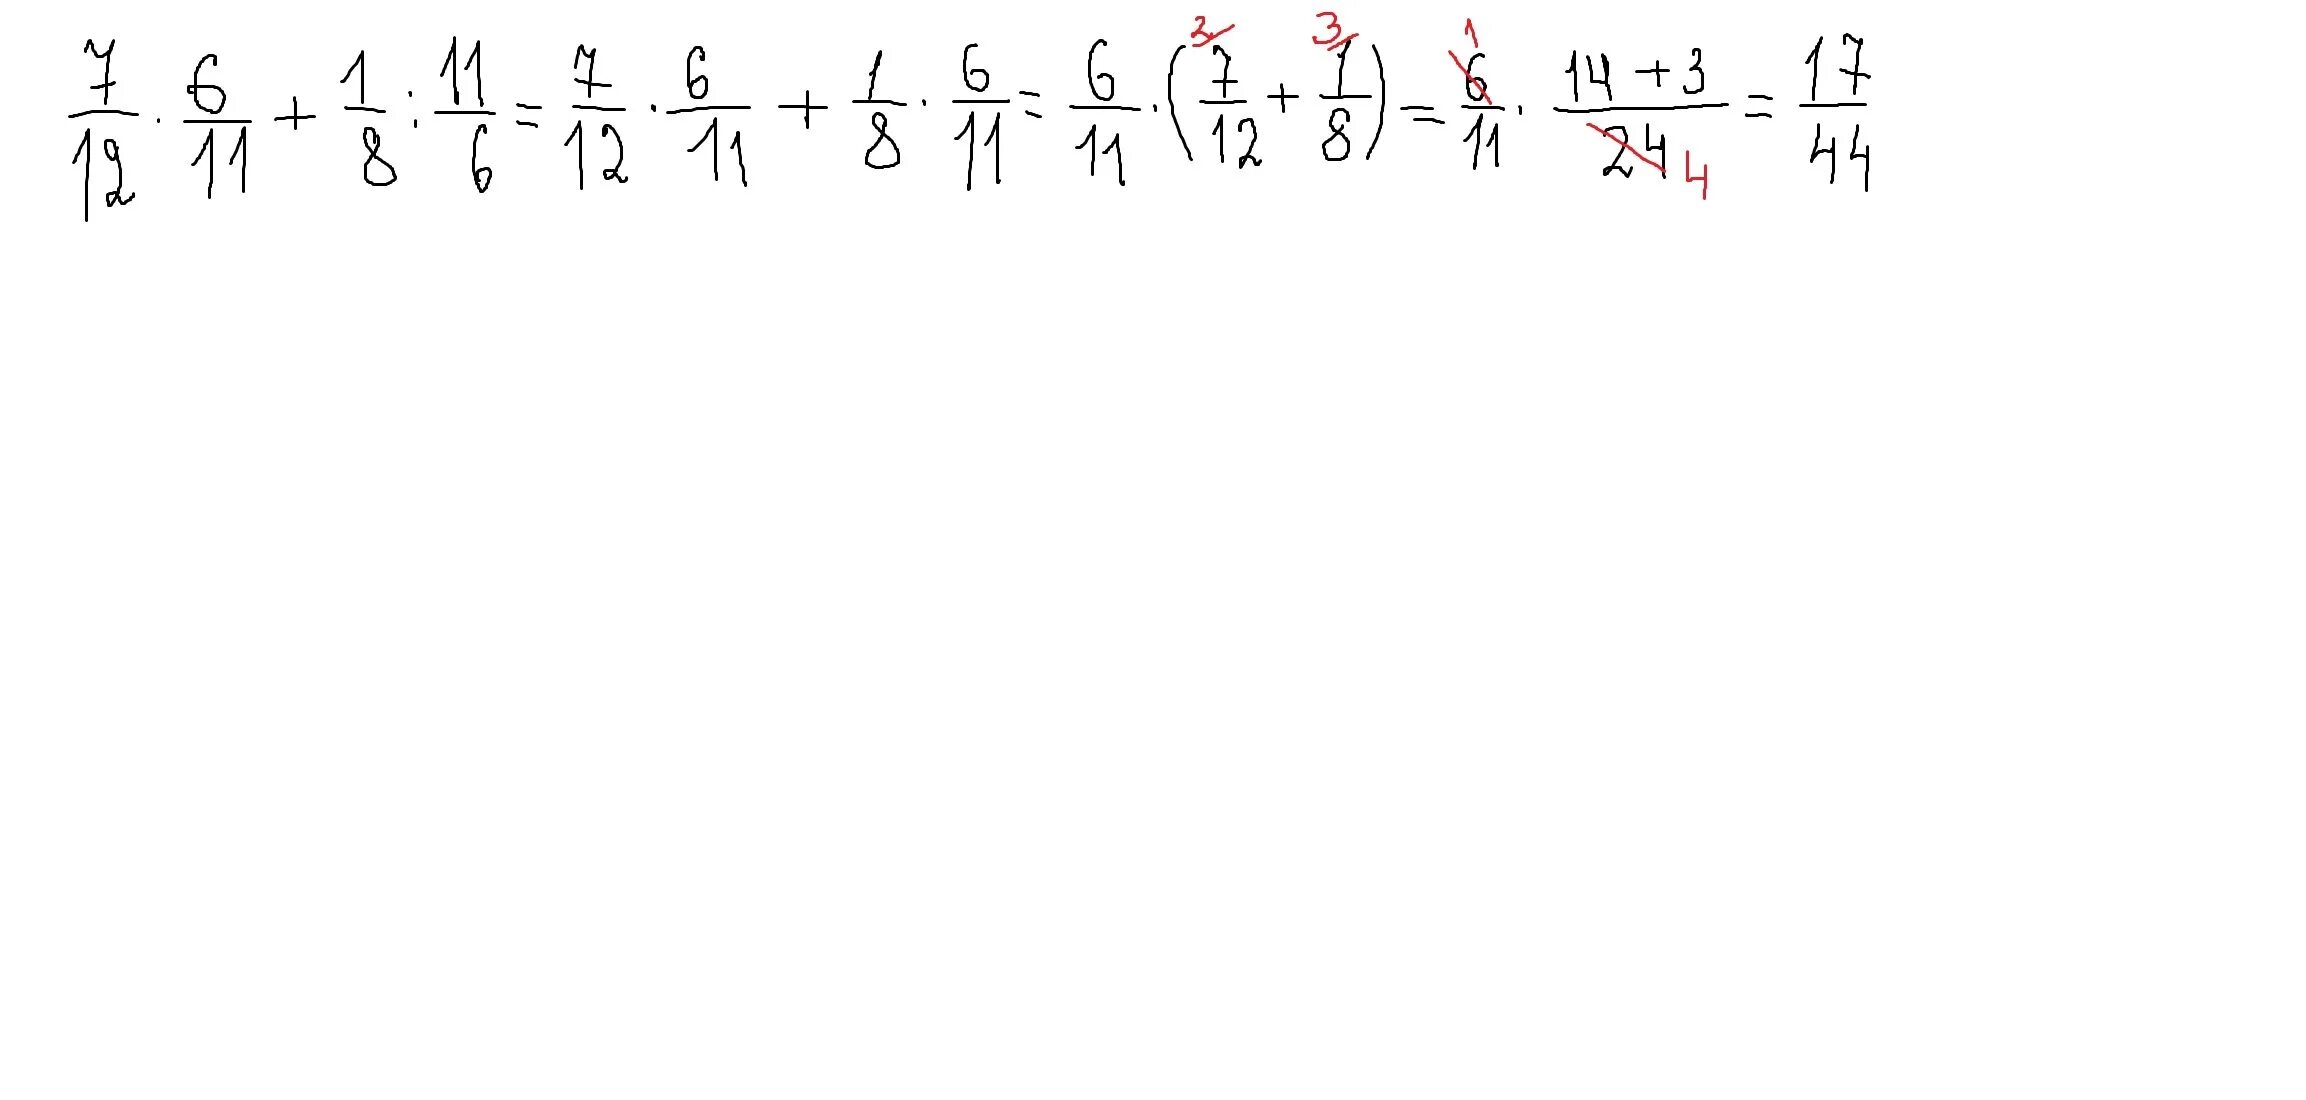 12 7 12 5 11 21. Шесть одиннадцатых. Найдите значимое числовое выражение 7/12*6/11+1/8:11/6. (12-6):(12:6) Порядок. Значение выражения удобным способом.